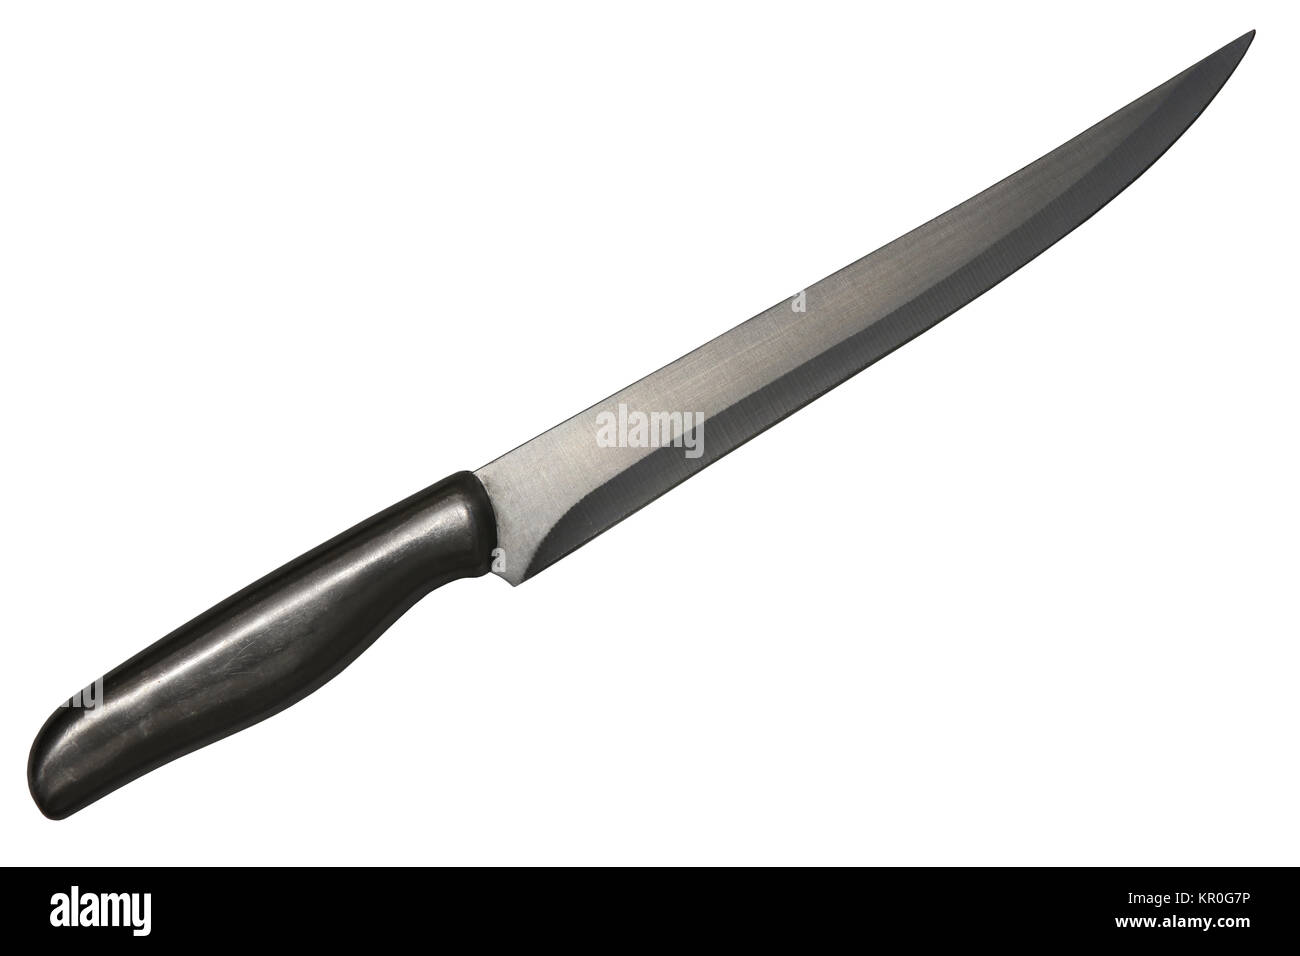 Un cuchillo de cocina de acero stainles aislado Foto de stock